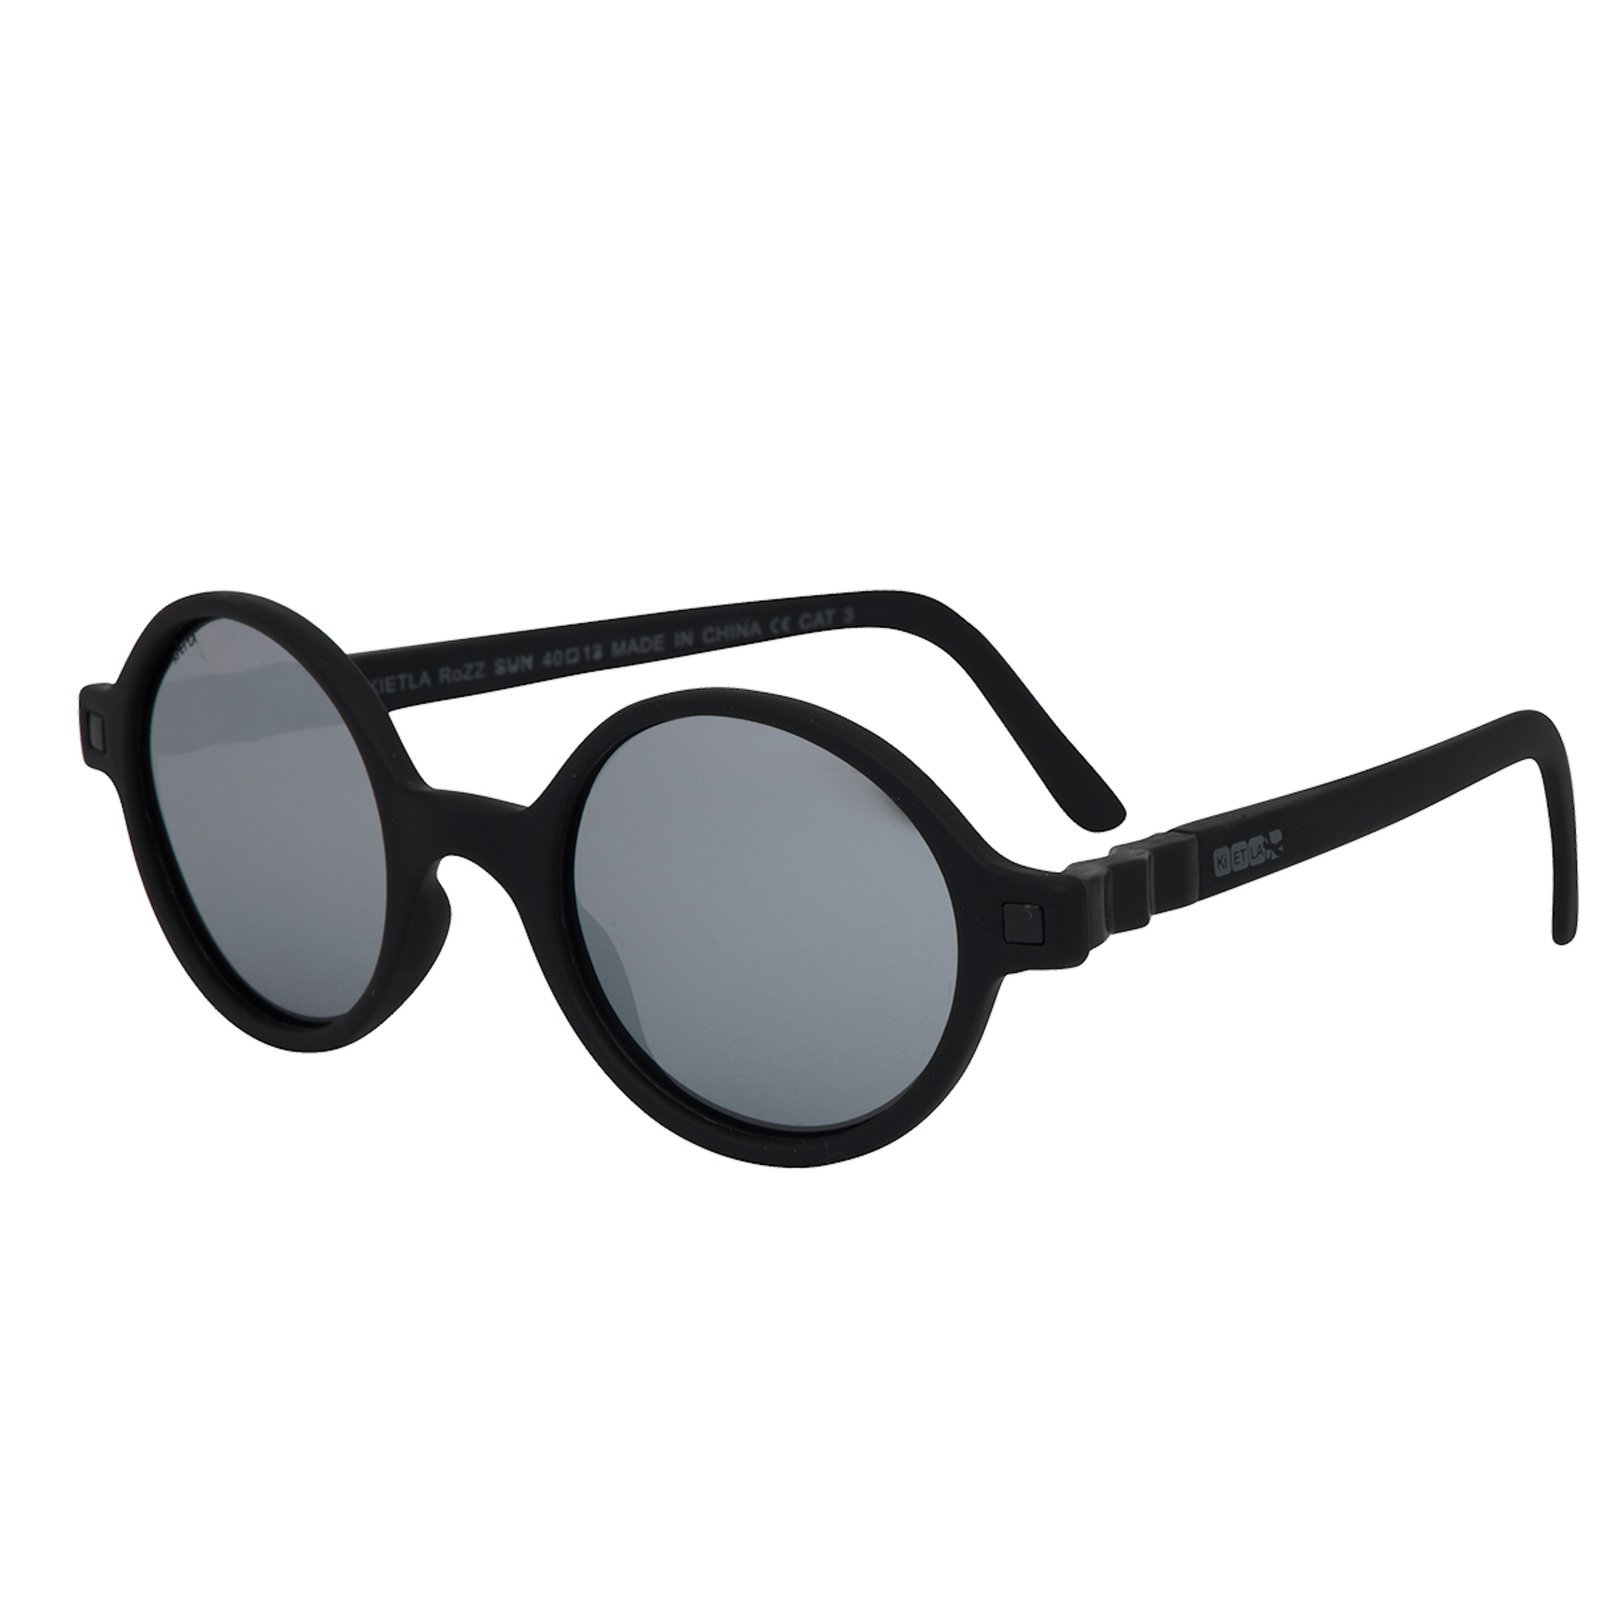 Okulary przeciwsłoneczne RoZZ 4-6 Black | Kietla